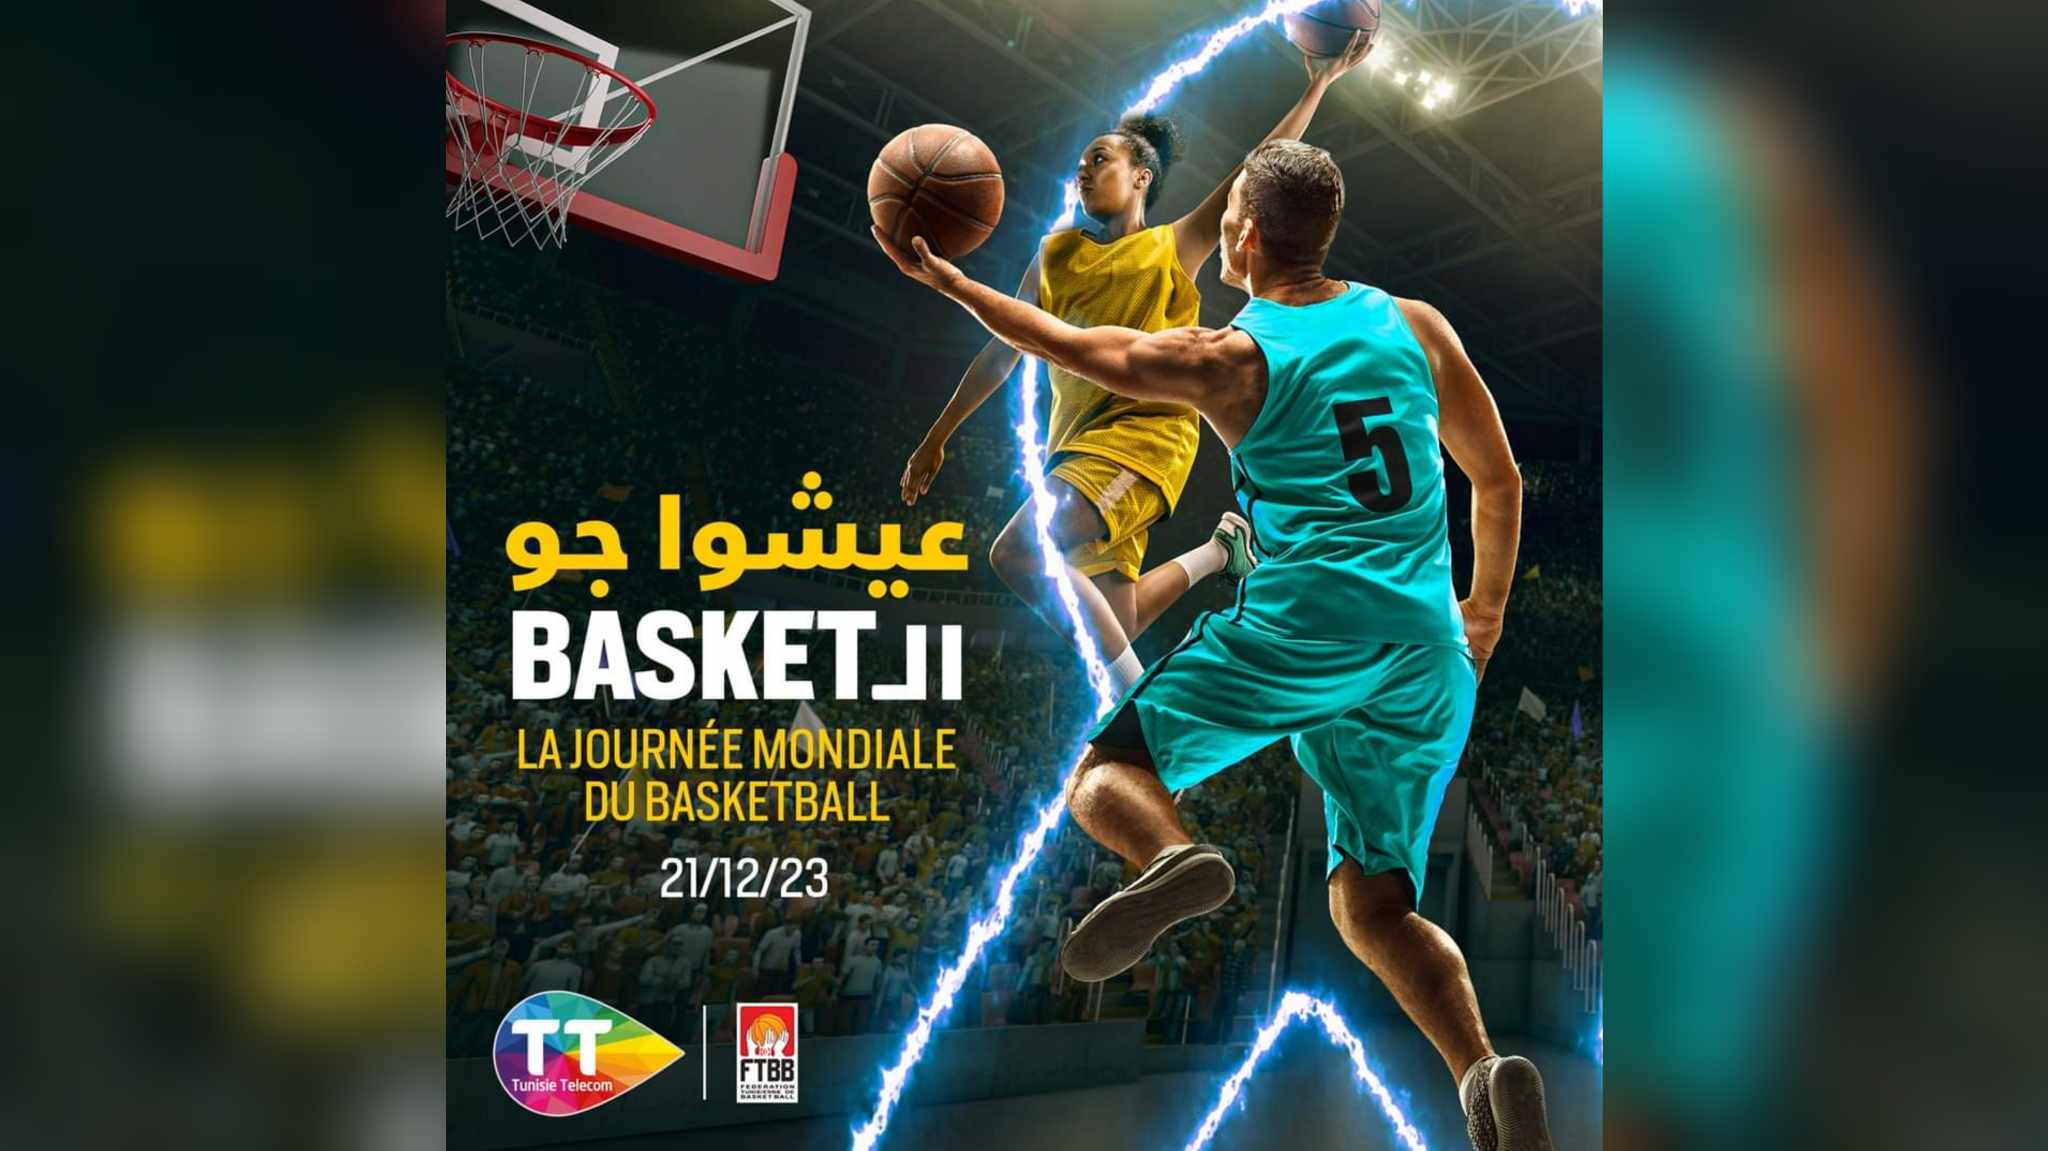  "اتصالات تونس" تحتفل باليوم العالمي لكرة السلة